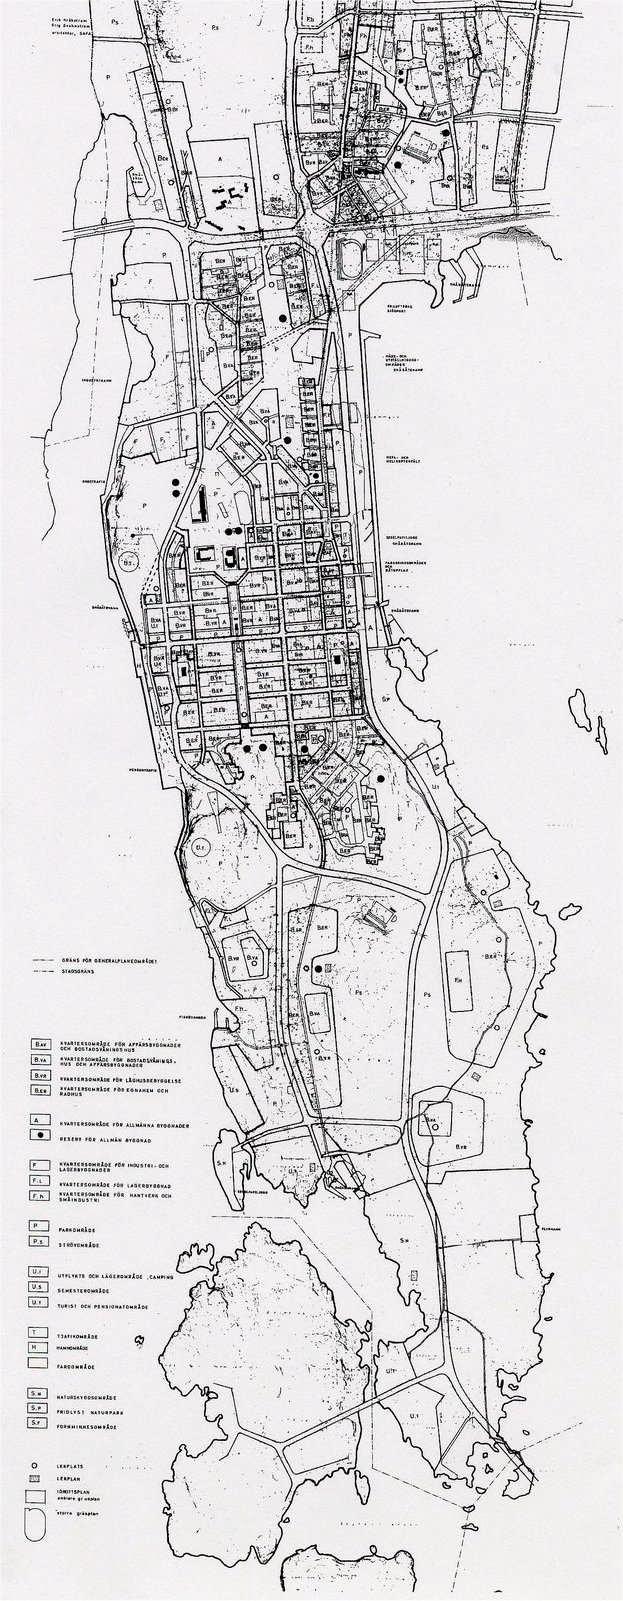 GENERALPLAN 1964 Efter inkorporeringen 1961 utarbetade staden en generalplan -64 över hela det förstorade stadsområdet.